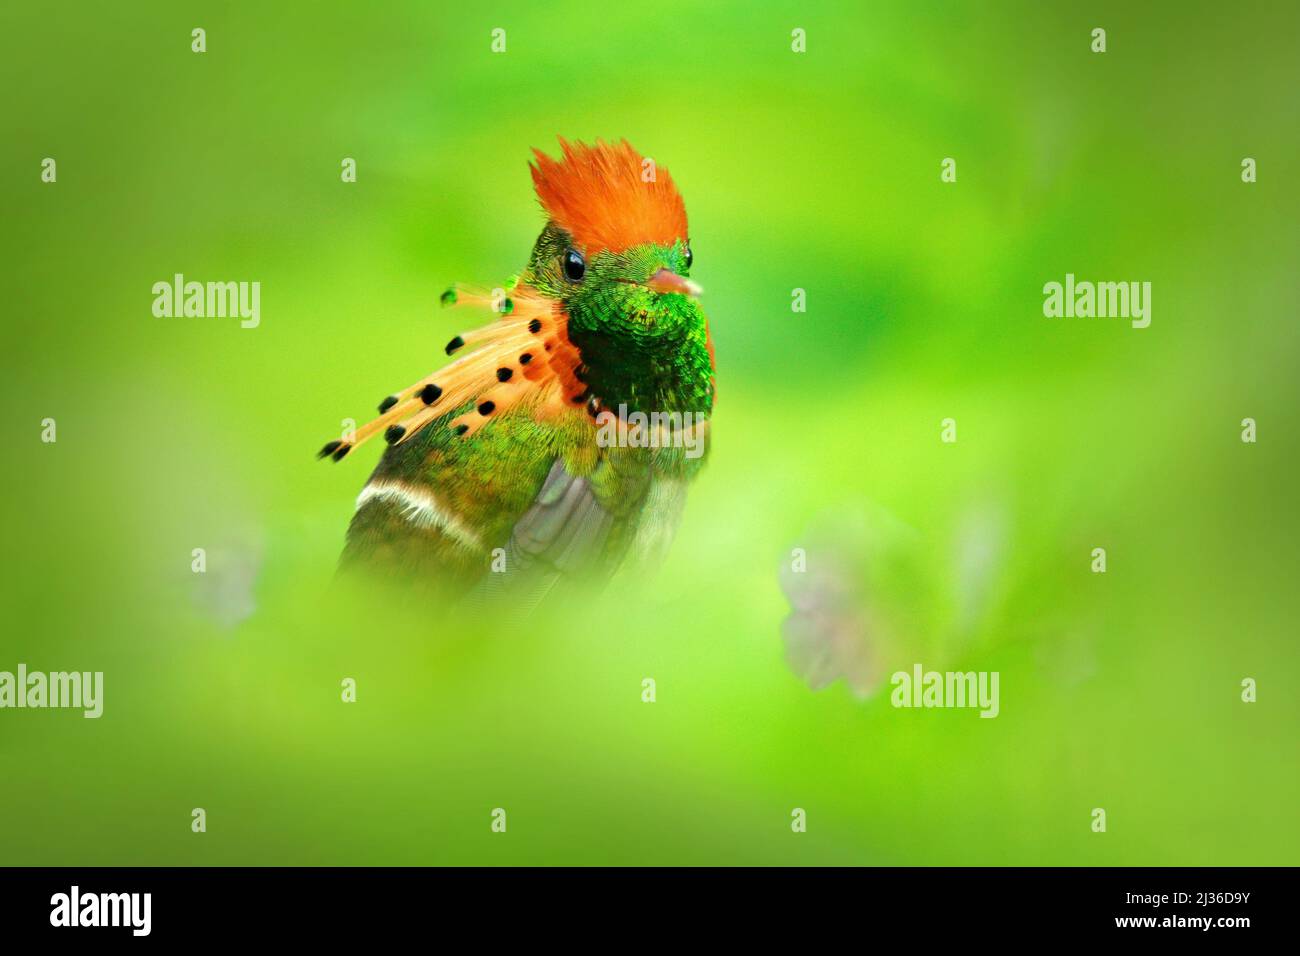 Garganta amarilla pájaro hermoso fotografías e imágenes de alta resolución  - Página 3 - Alamy